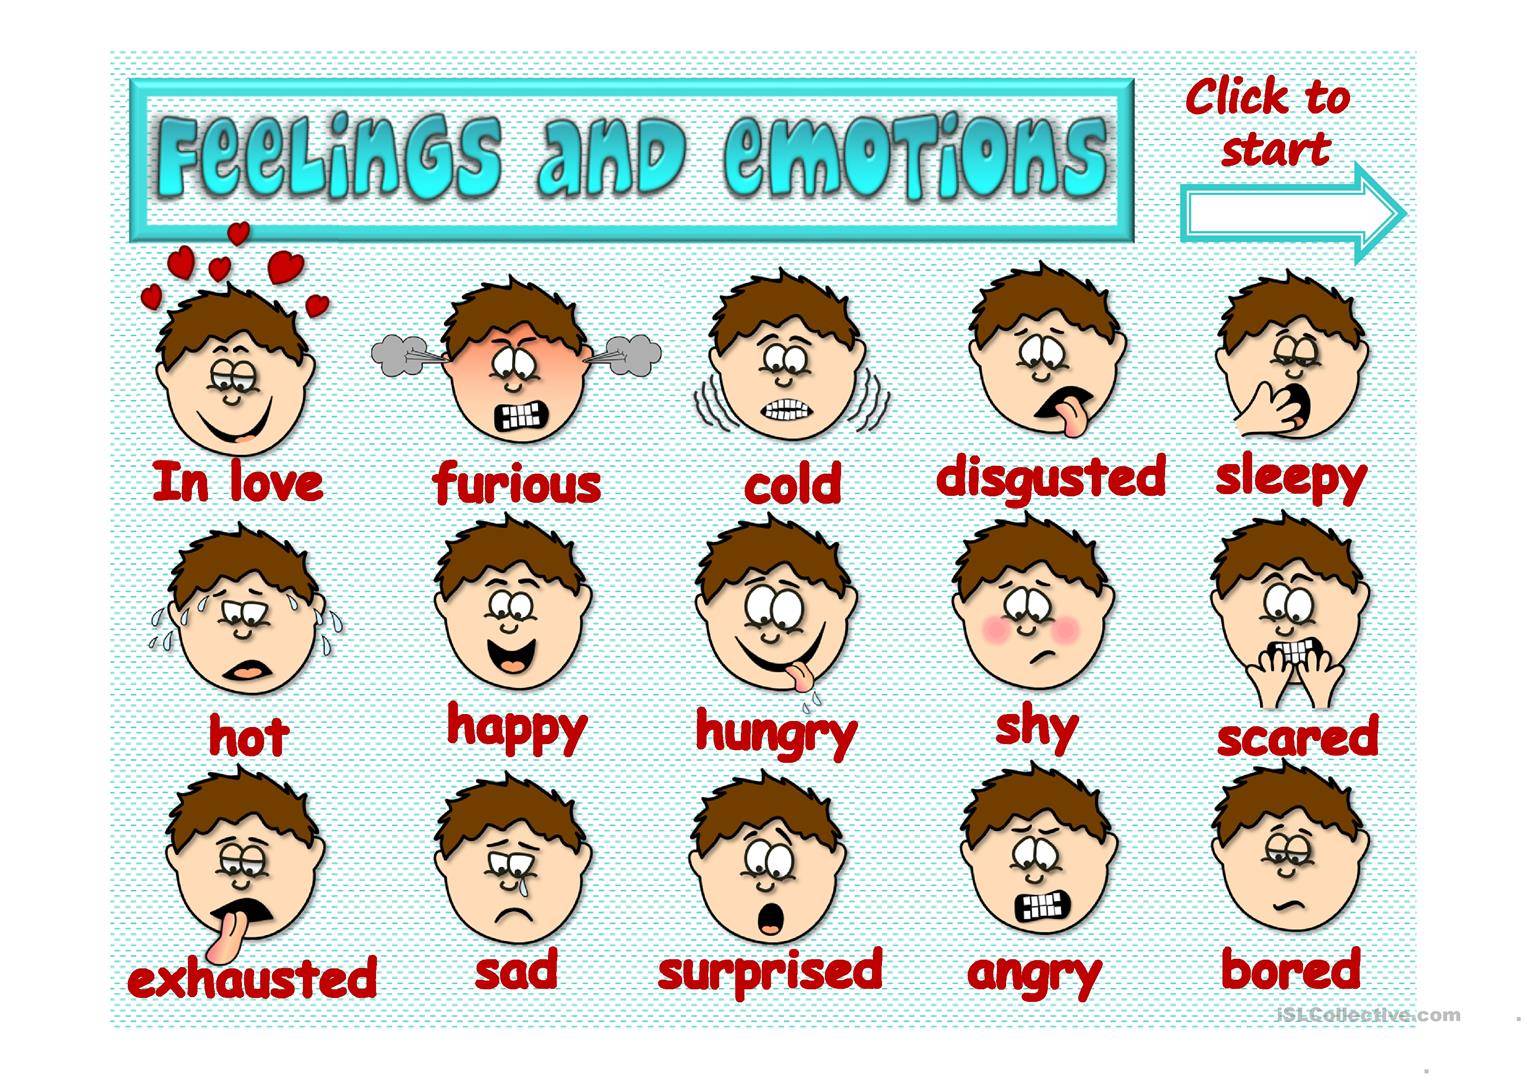 Описание эмоций на картинке на английском